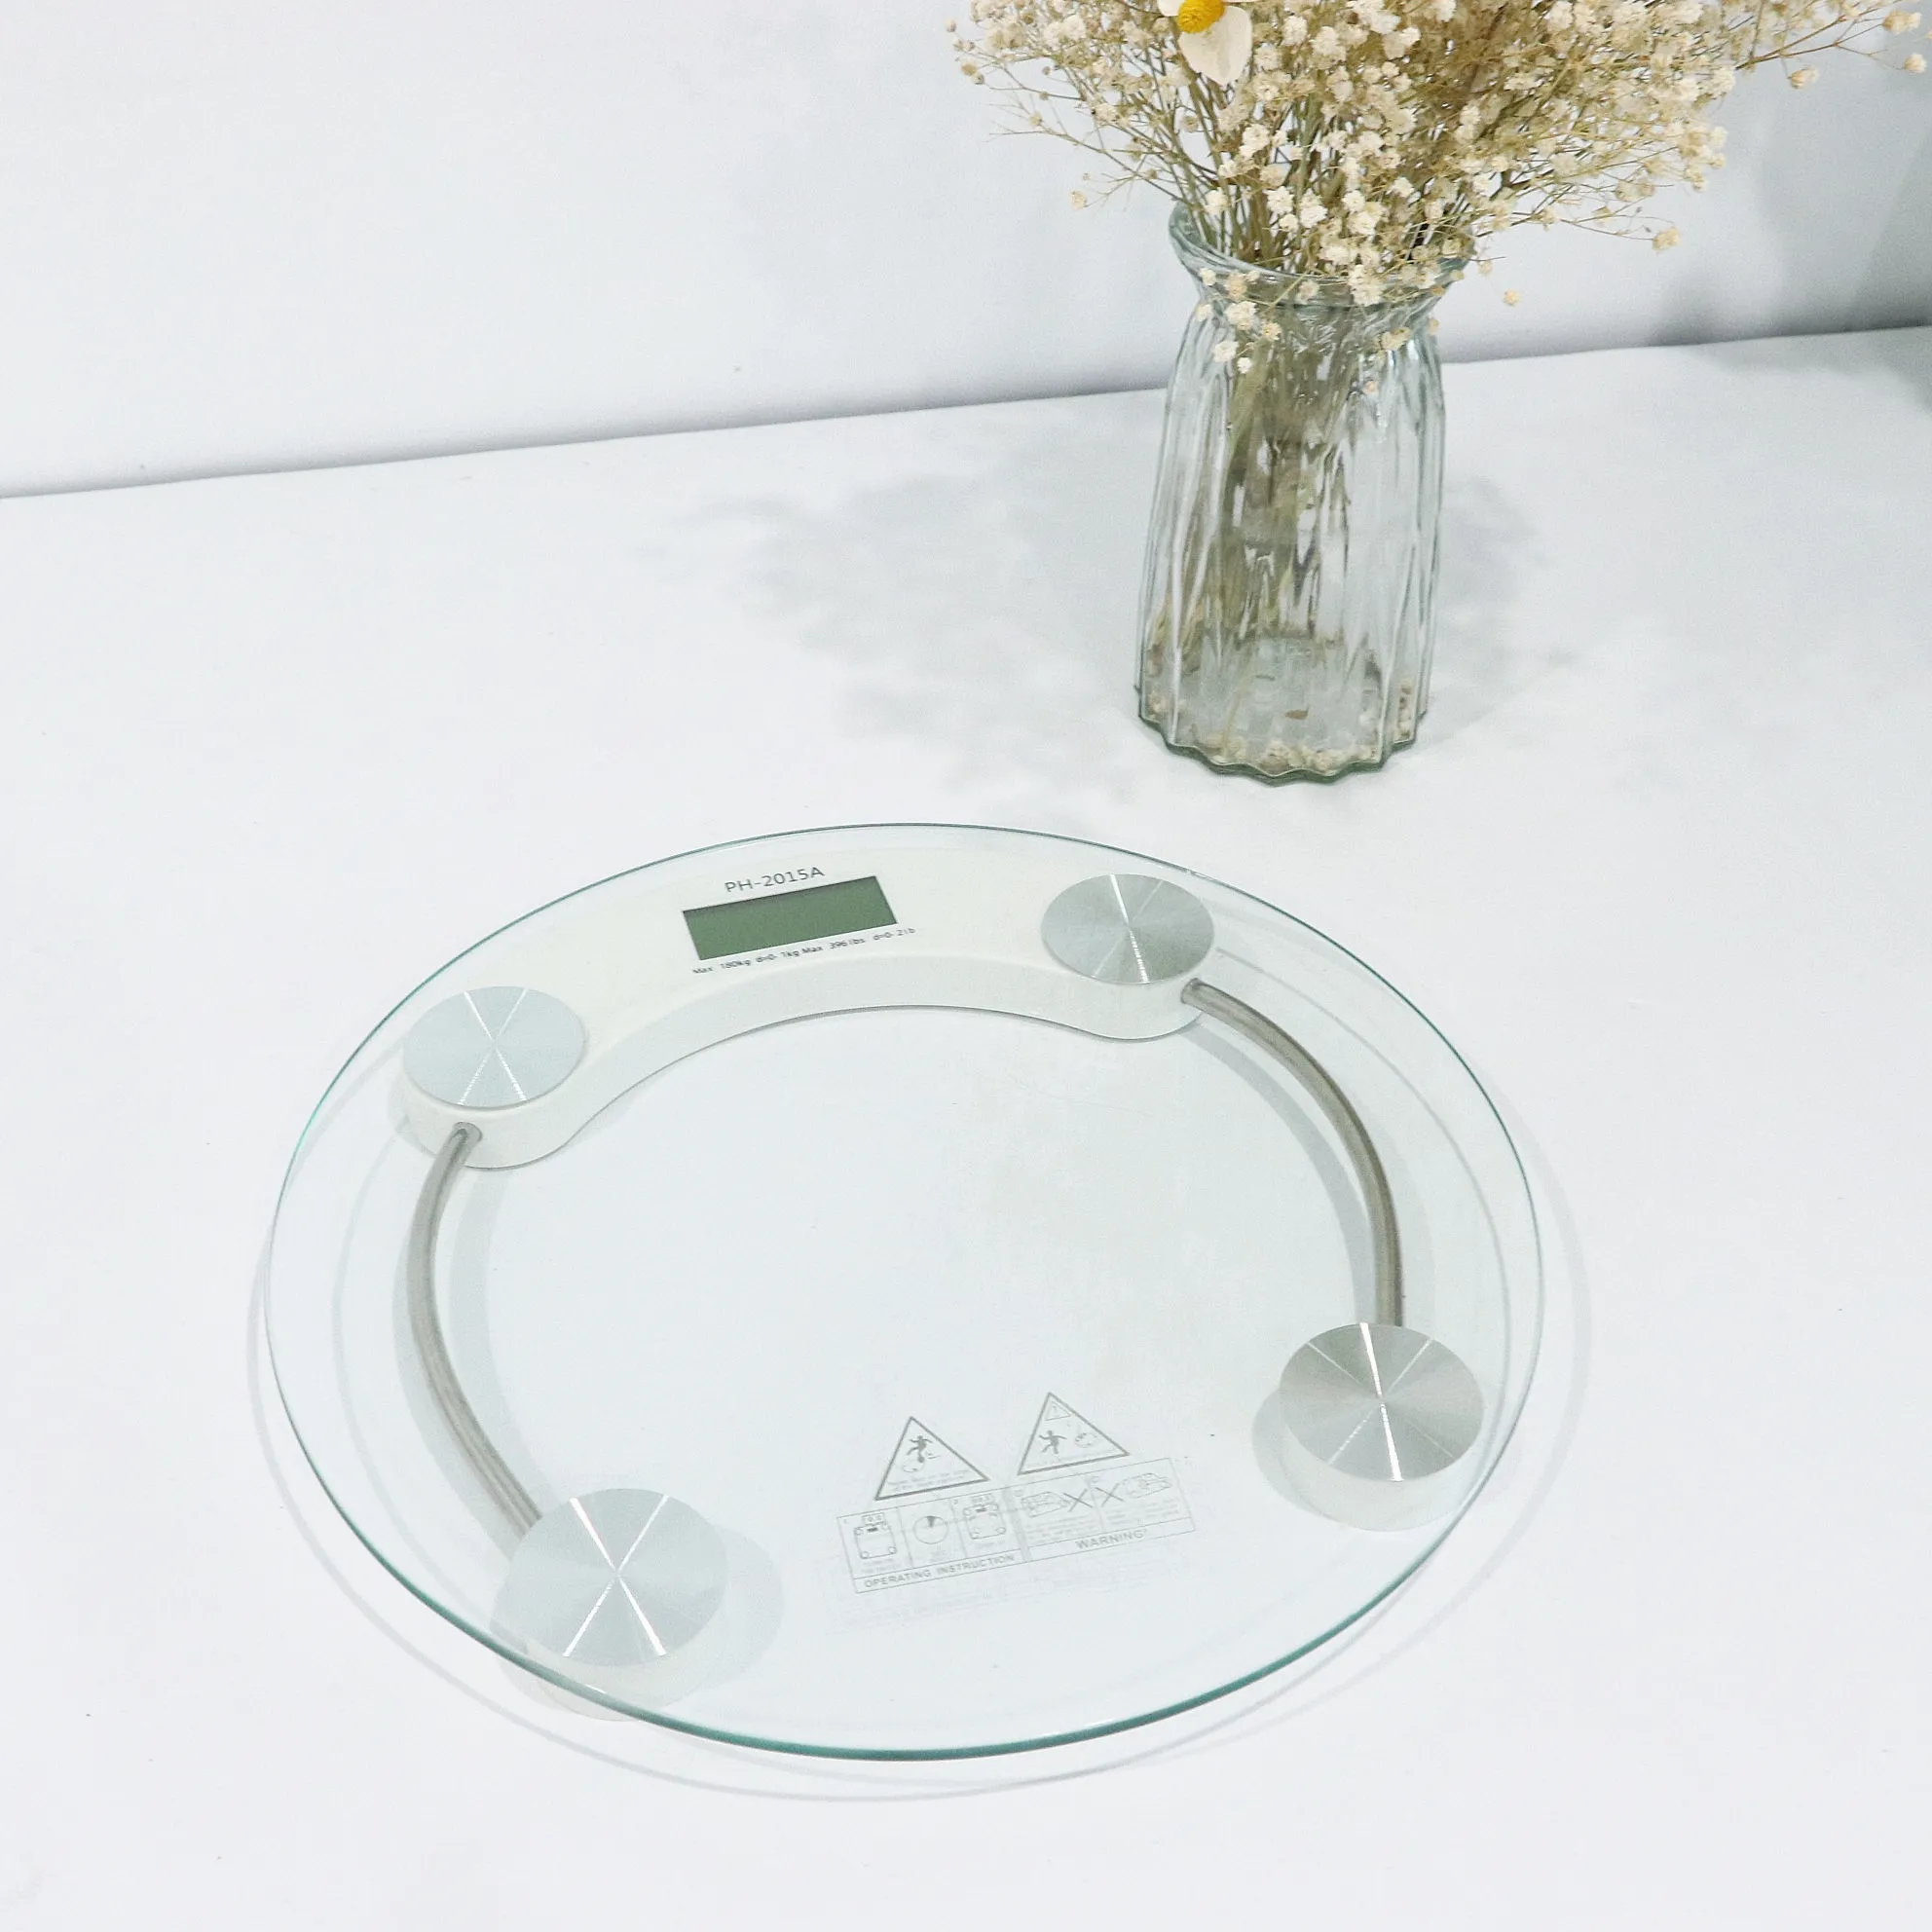 رخيصة 180 كجم الشخصية الذكية الرقمية مقياس وزن الحمام مع الزجاج المقسى